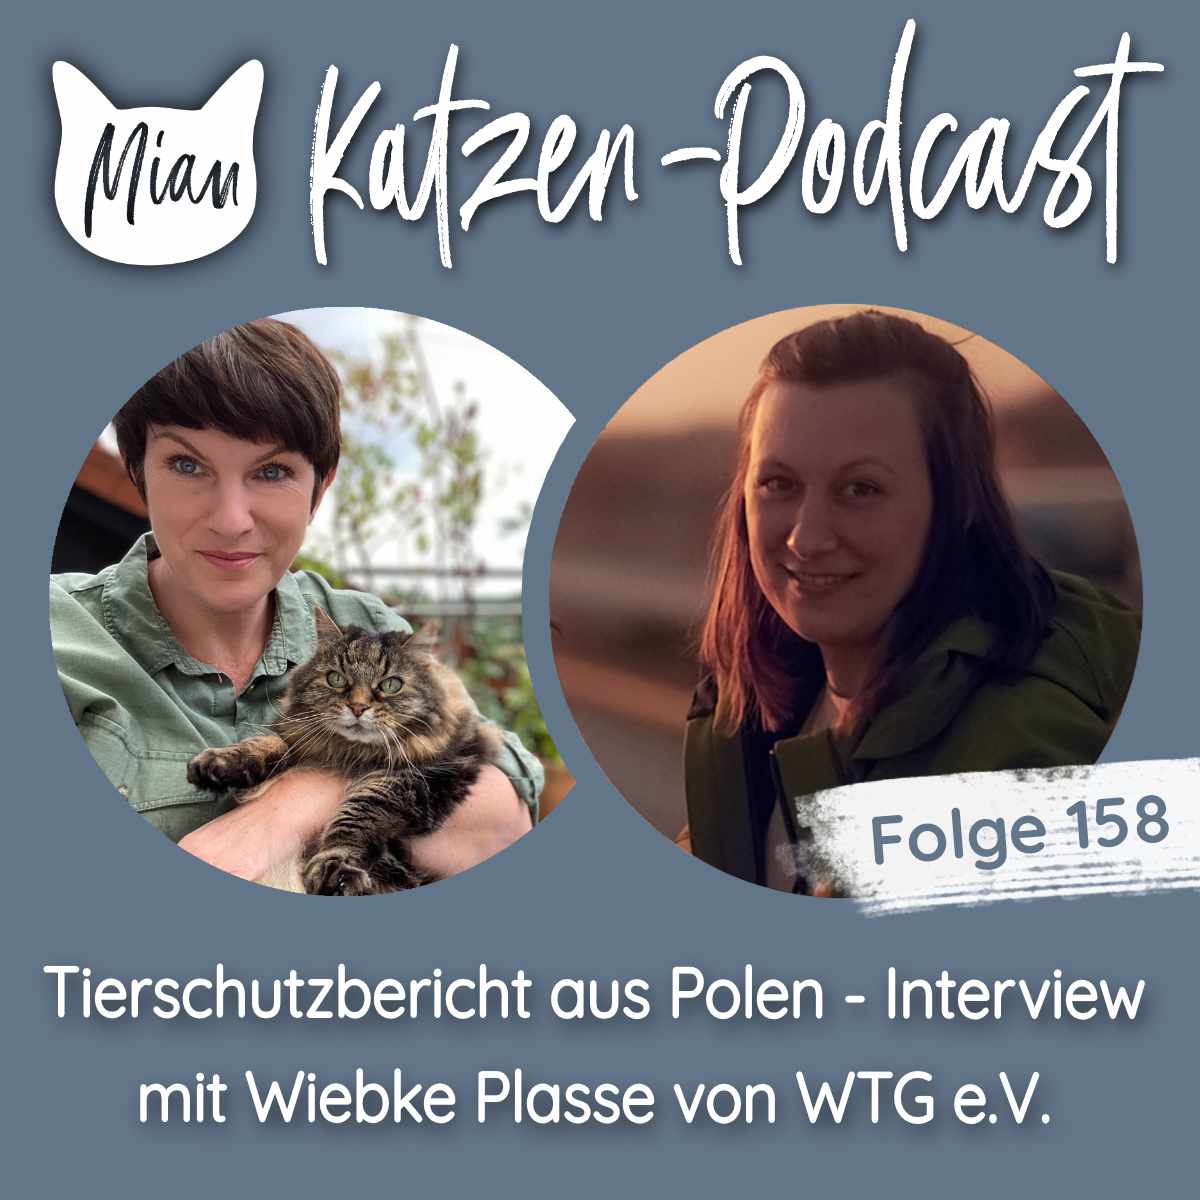 Grenzenlose Hilfsbereitschaft: Ein Tierschutzbericht aus Polen - Interview mit Wiebke Plasse von WTG e.V. | MKP158